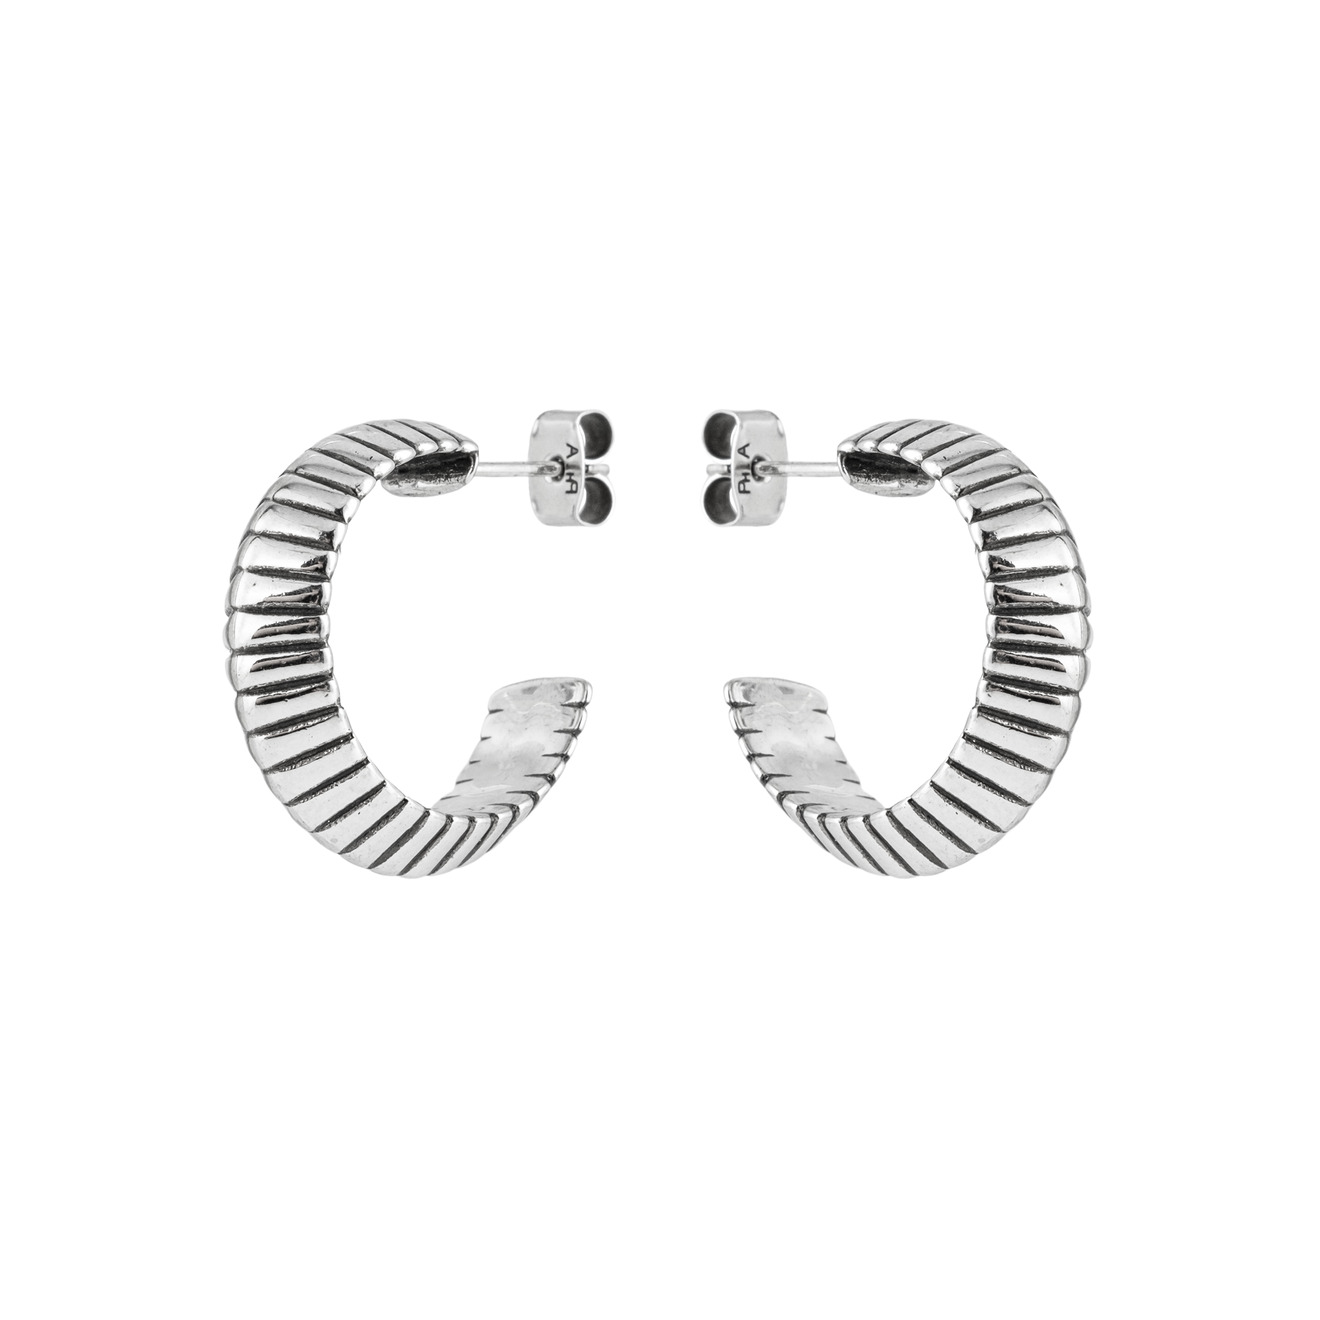 Philippe Audibert Серьги-кольца Jens с серебряным покрытием philippe audibert позолоченные серьги jens